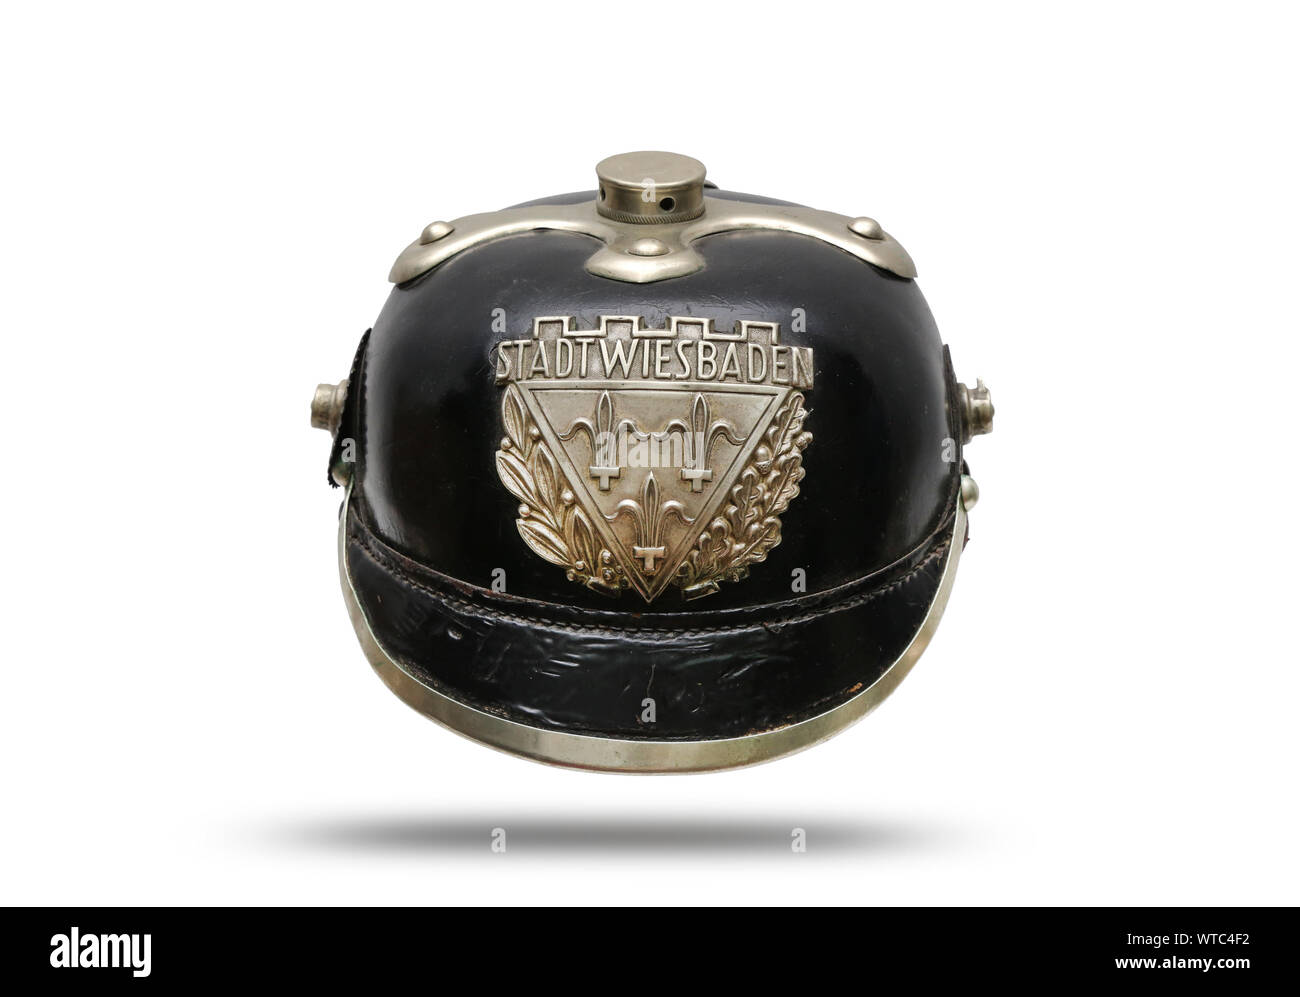 WWI alemán policía casco de cuero negro de la ciudad de Wiesbaden, en el occidental estado alemán de Hesse. Con Wiesbaden casco blanco de placa grabada se reunió Foto de stock